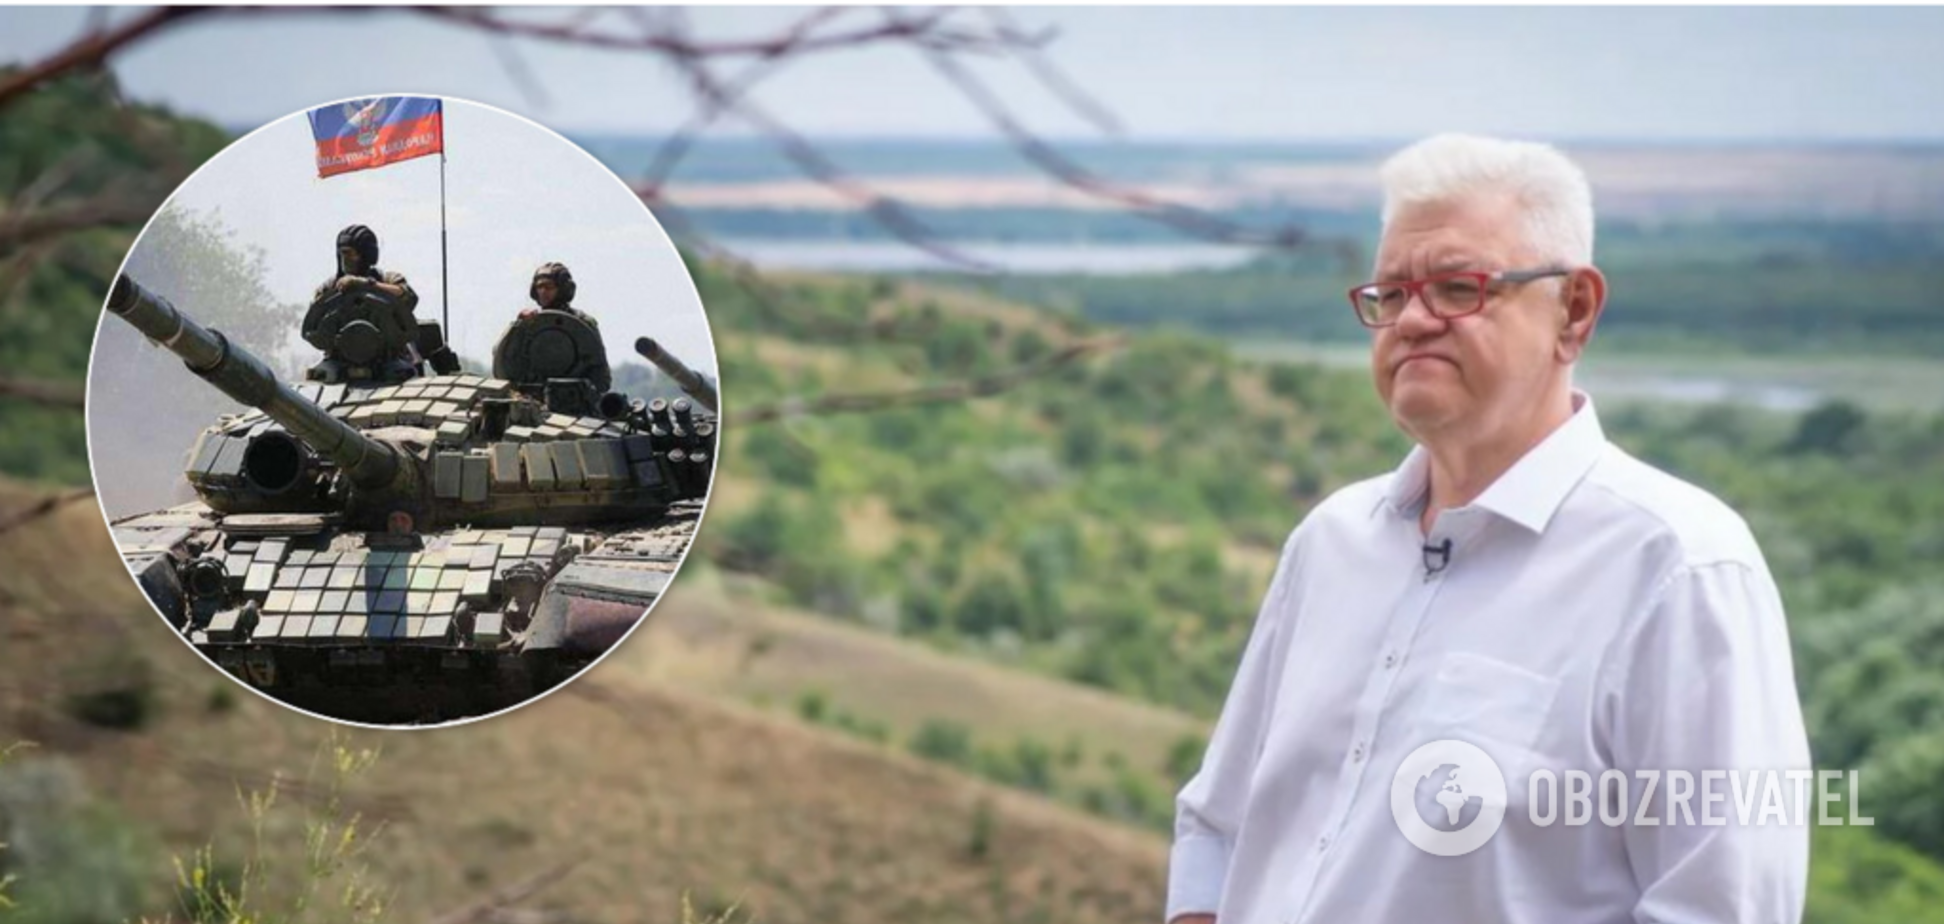 'Дурак или предатель?' Сивохо разгромили за заявление о 'разжигании войны' на Донбассе